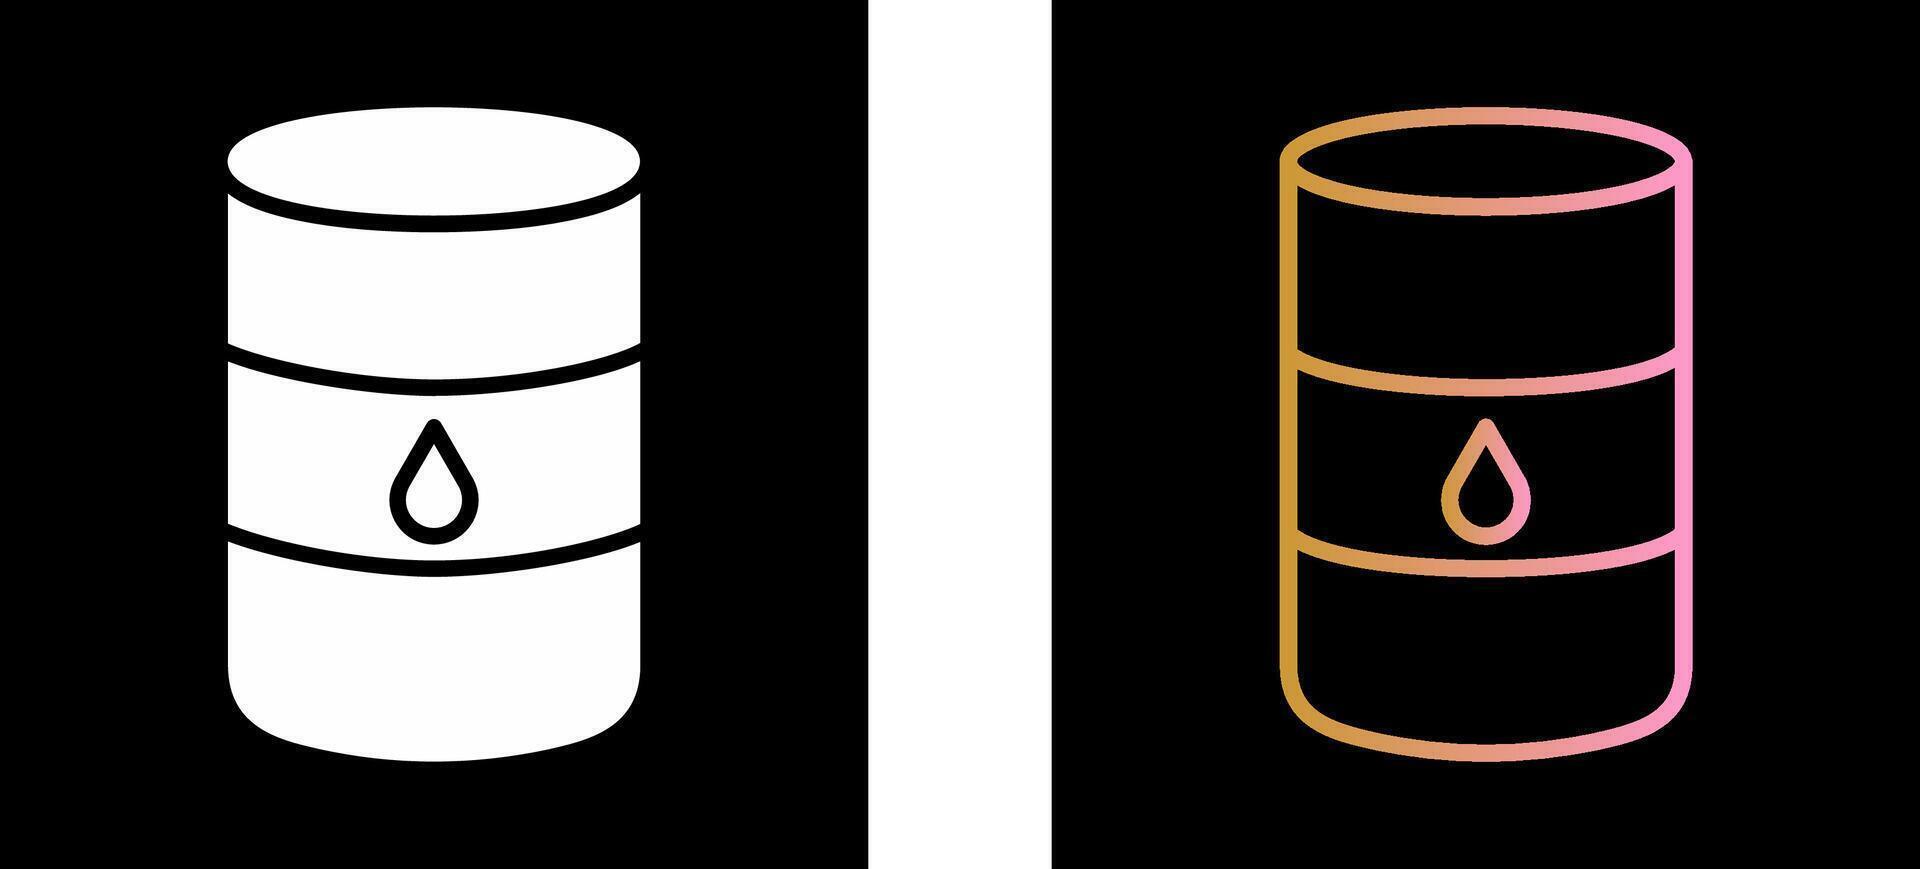 Oil Barrel Icon Design vector